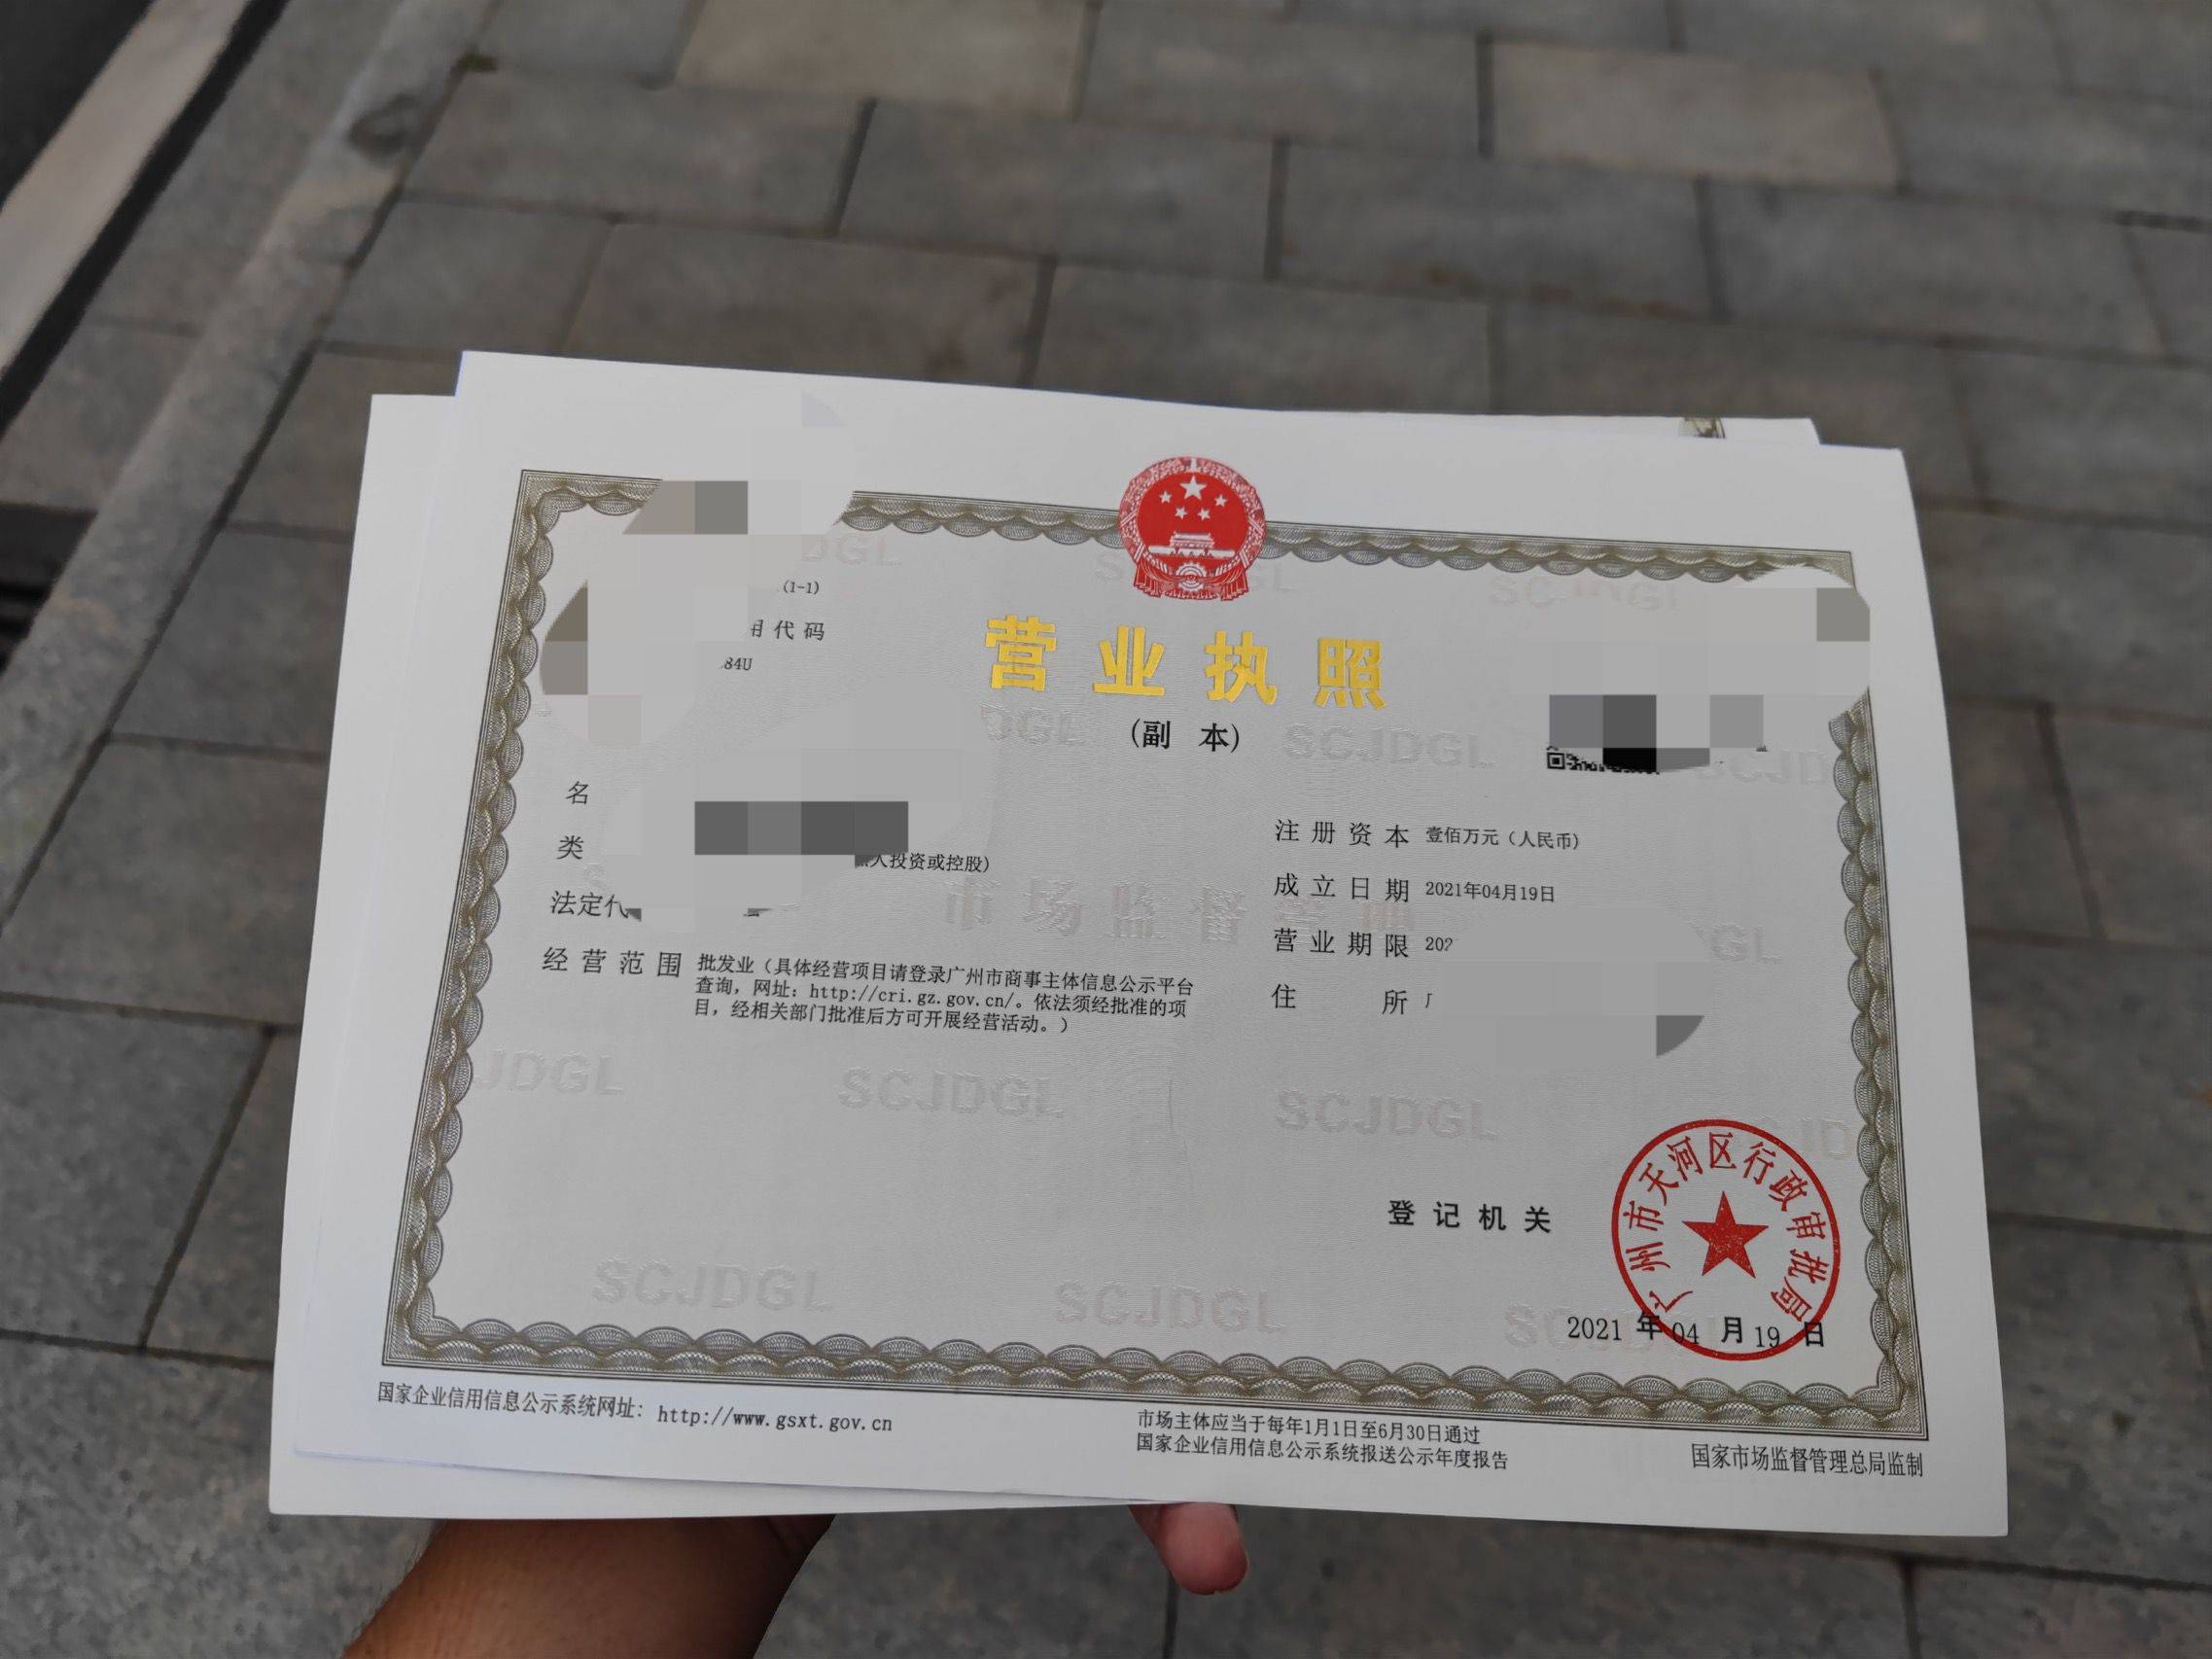 不熟悉注册广州公司流程,这家天河区贸易公司如何拿到营业执照?